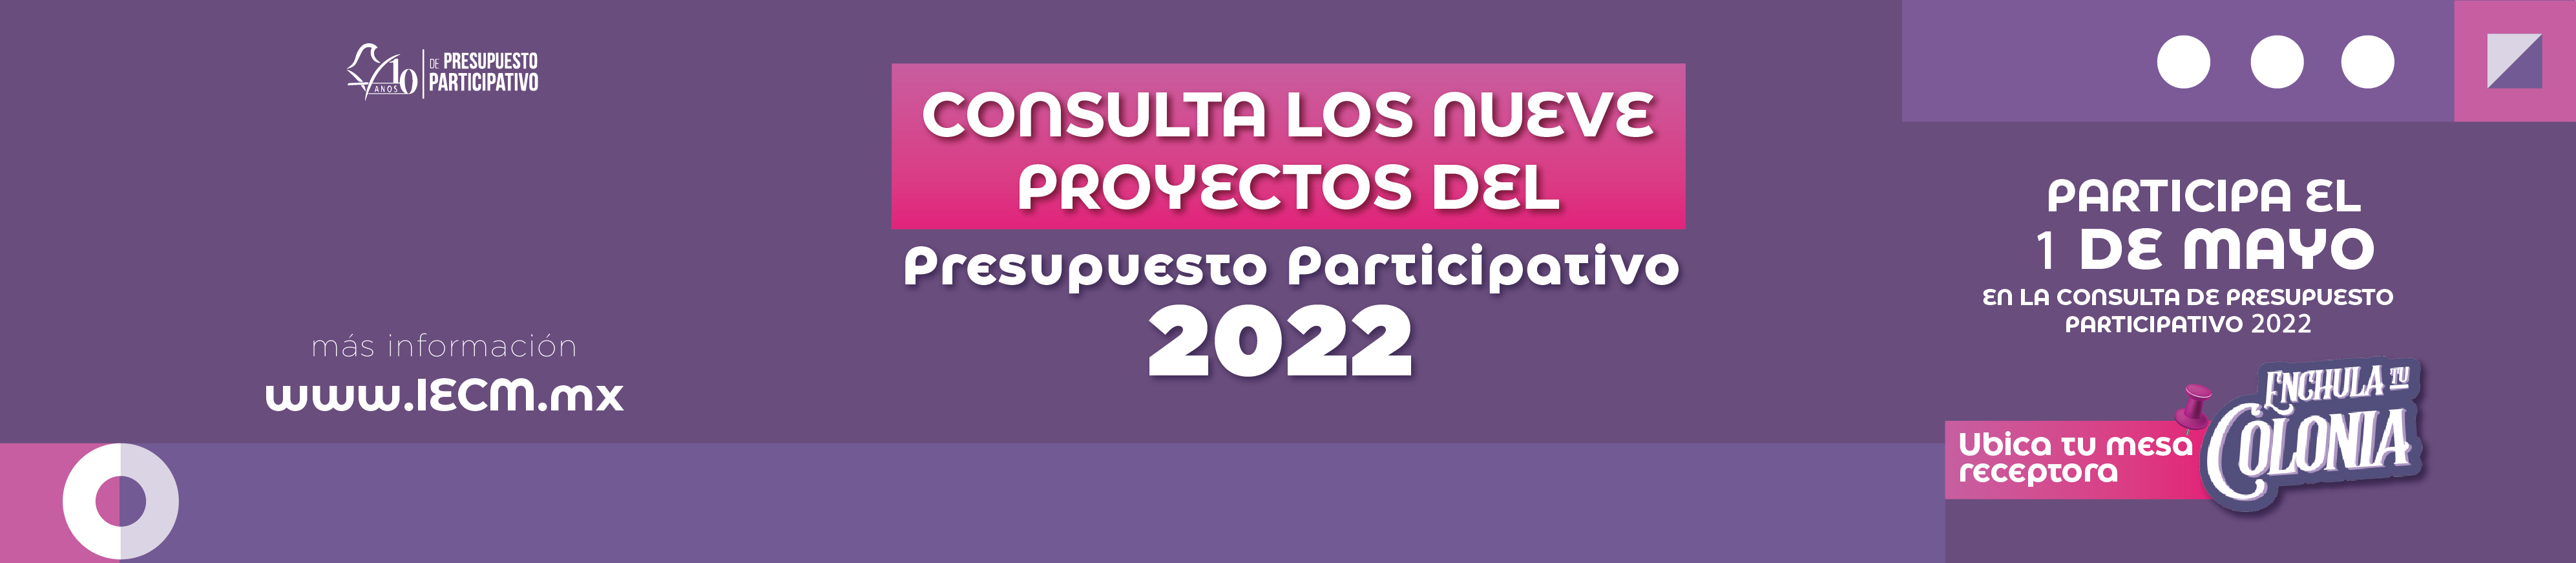 9 PROYECTOS PRESUPUESTO PARTICIPATIVO 2022